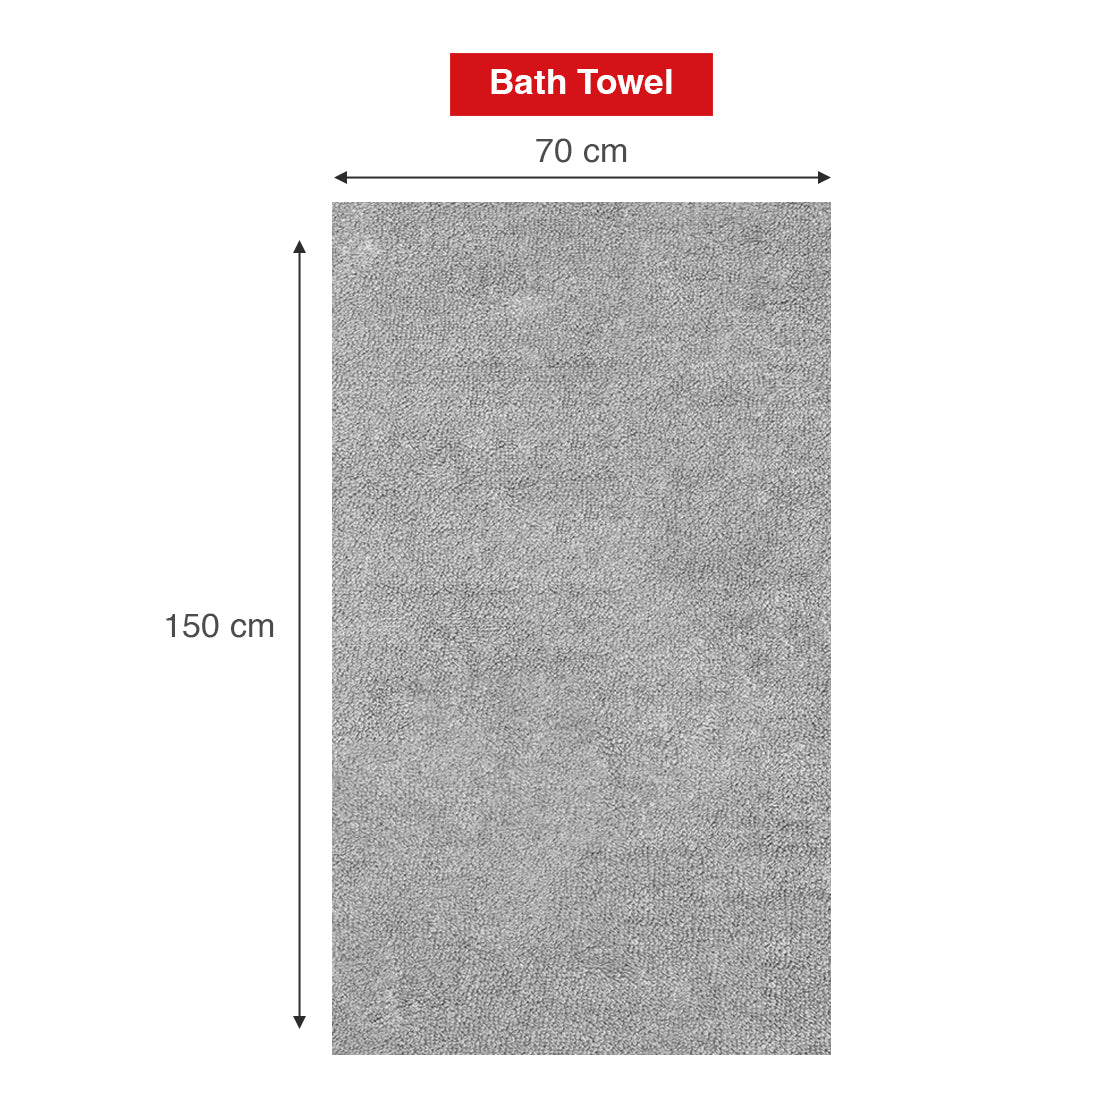 Arias Super Soft 500 GSM Cotton Bath Towel 70 x 150 cm (Lavender)